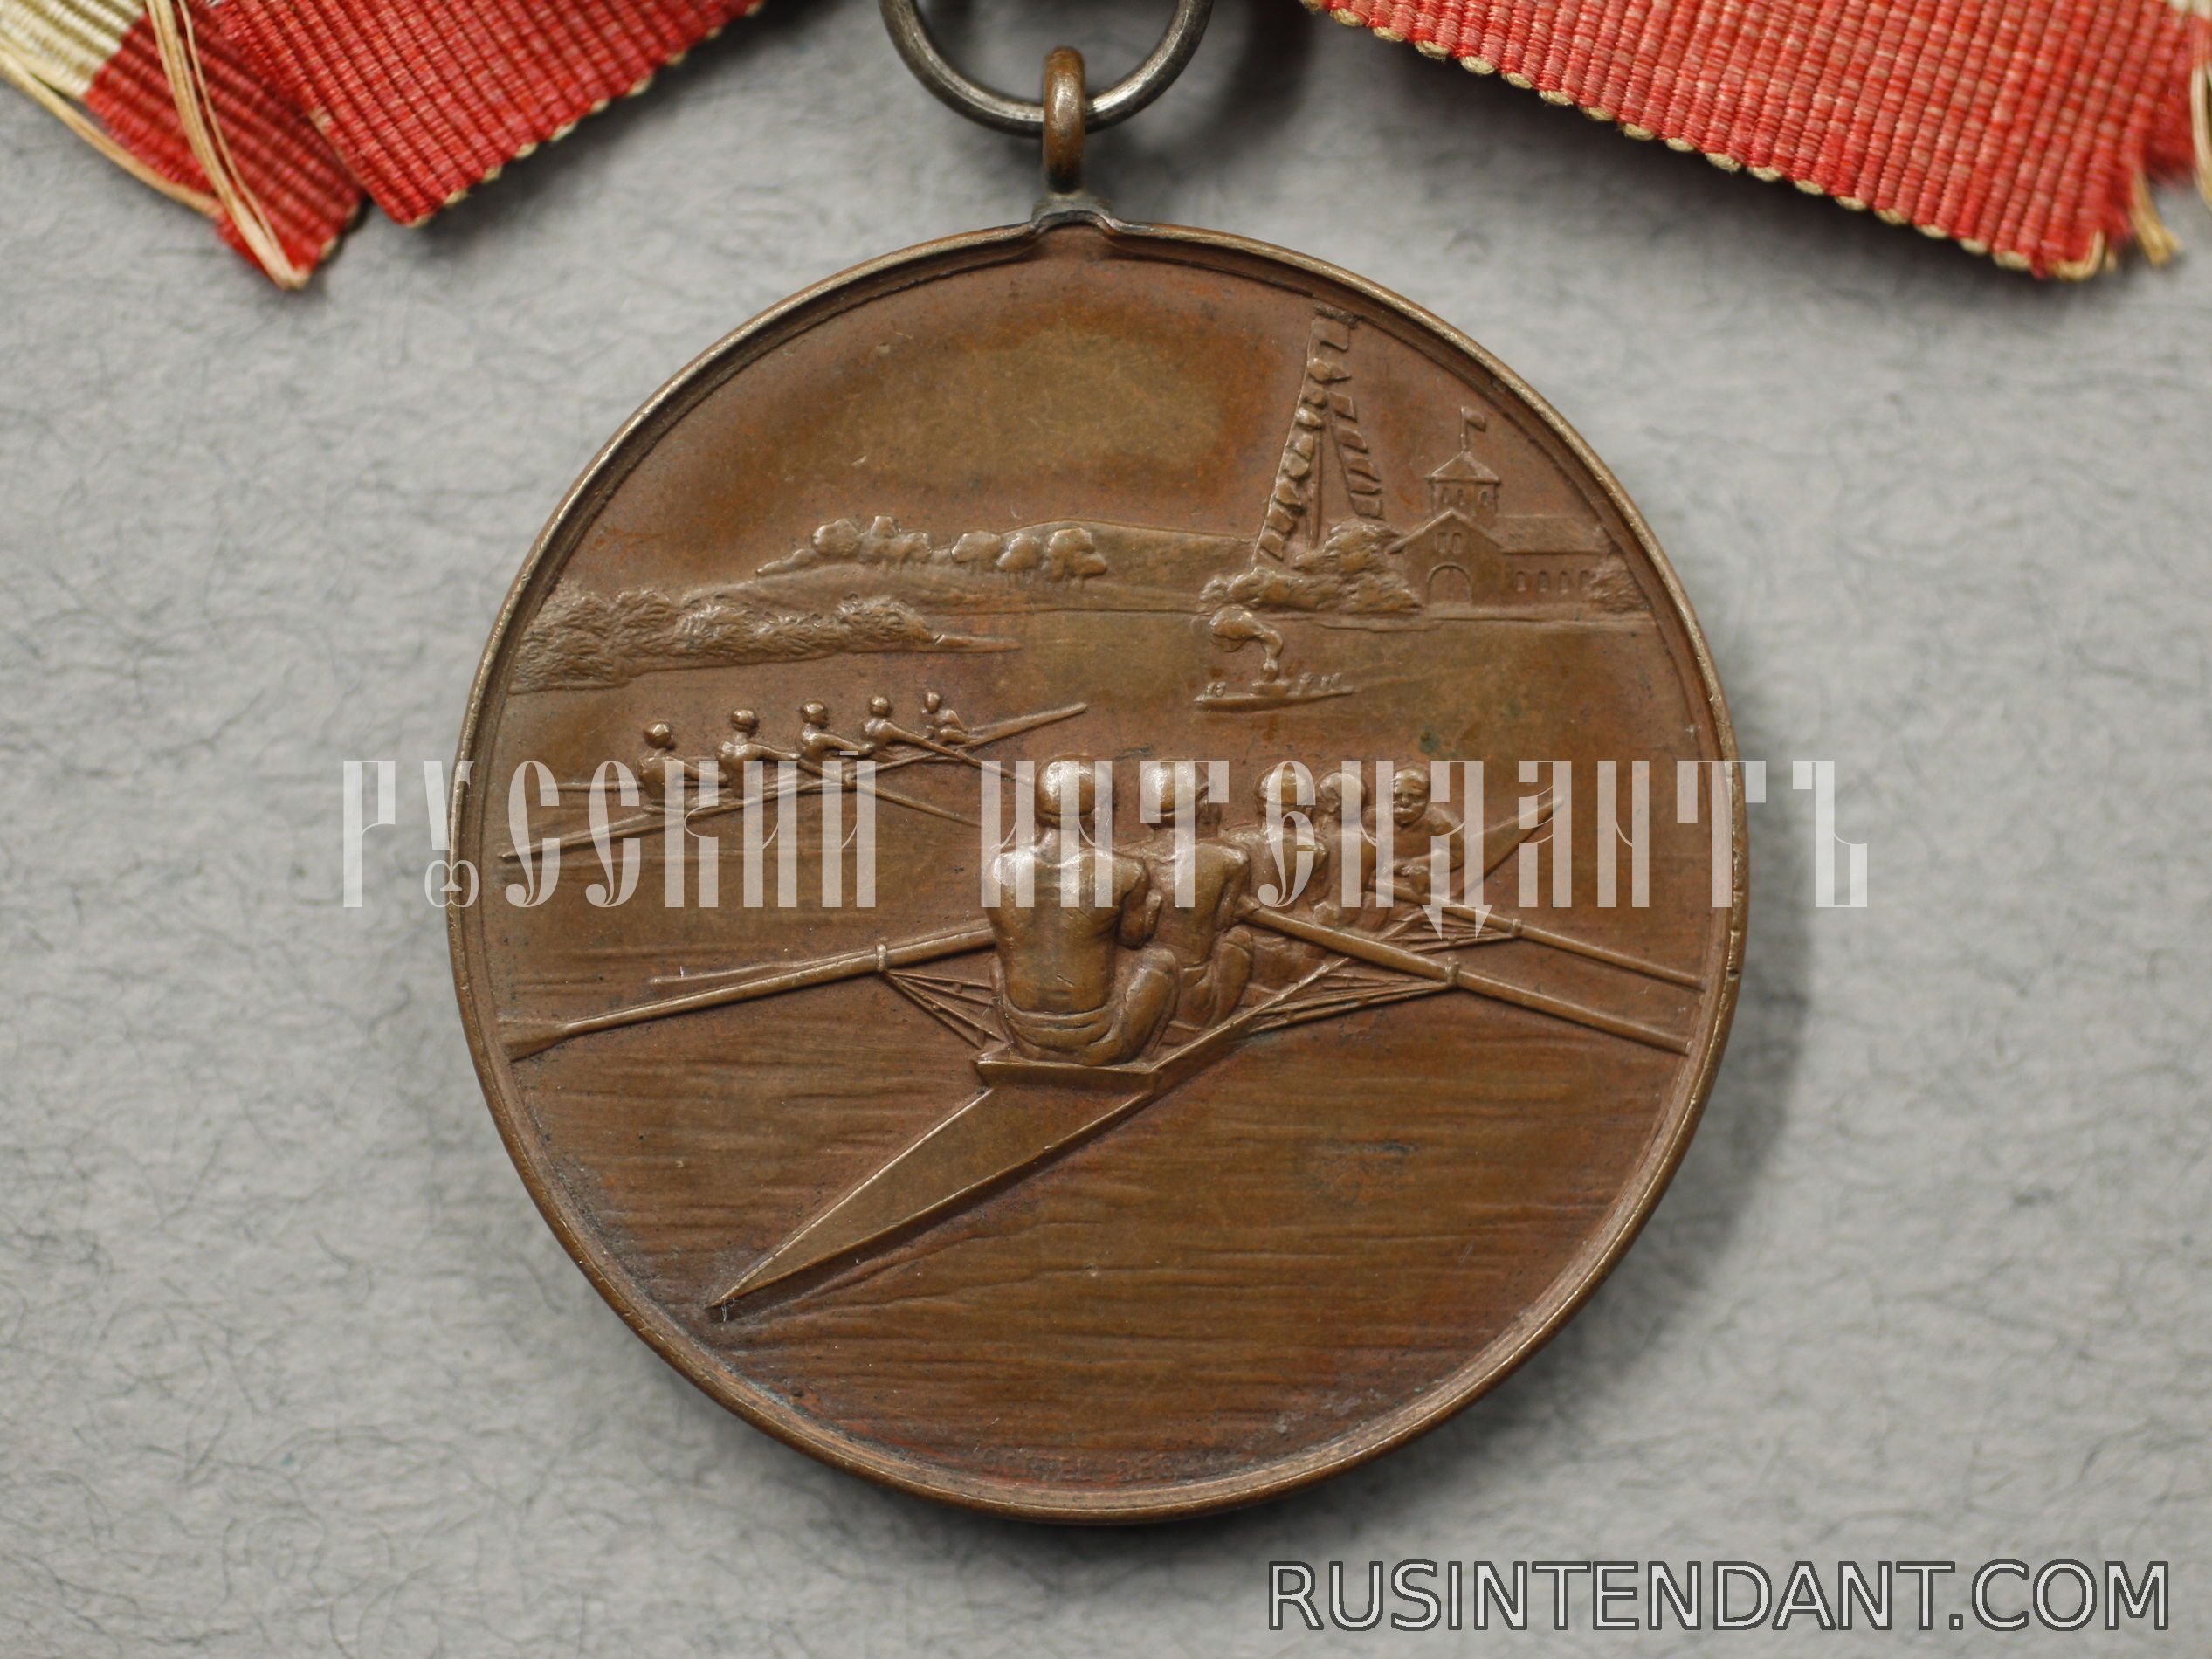 Фото 3: Бронзовая медаль Хамельнской регаты 